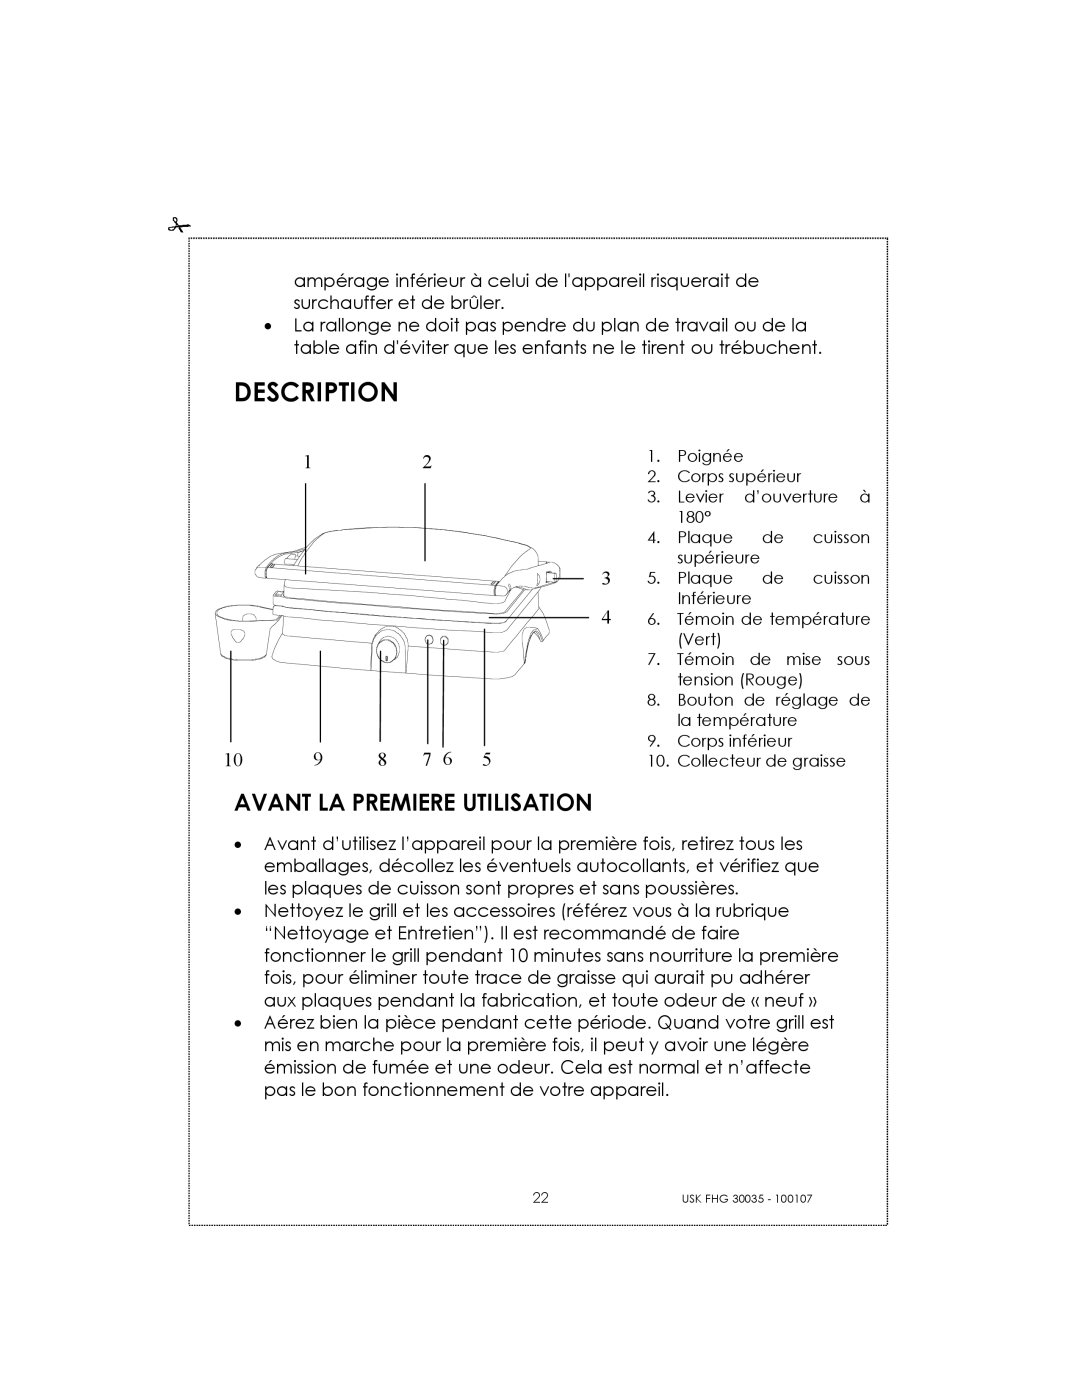 Kalorik 31025, 30035 manual Description, Avant La Premiere Utilisation 